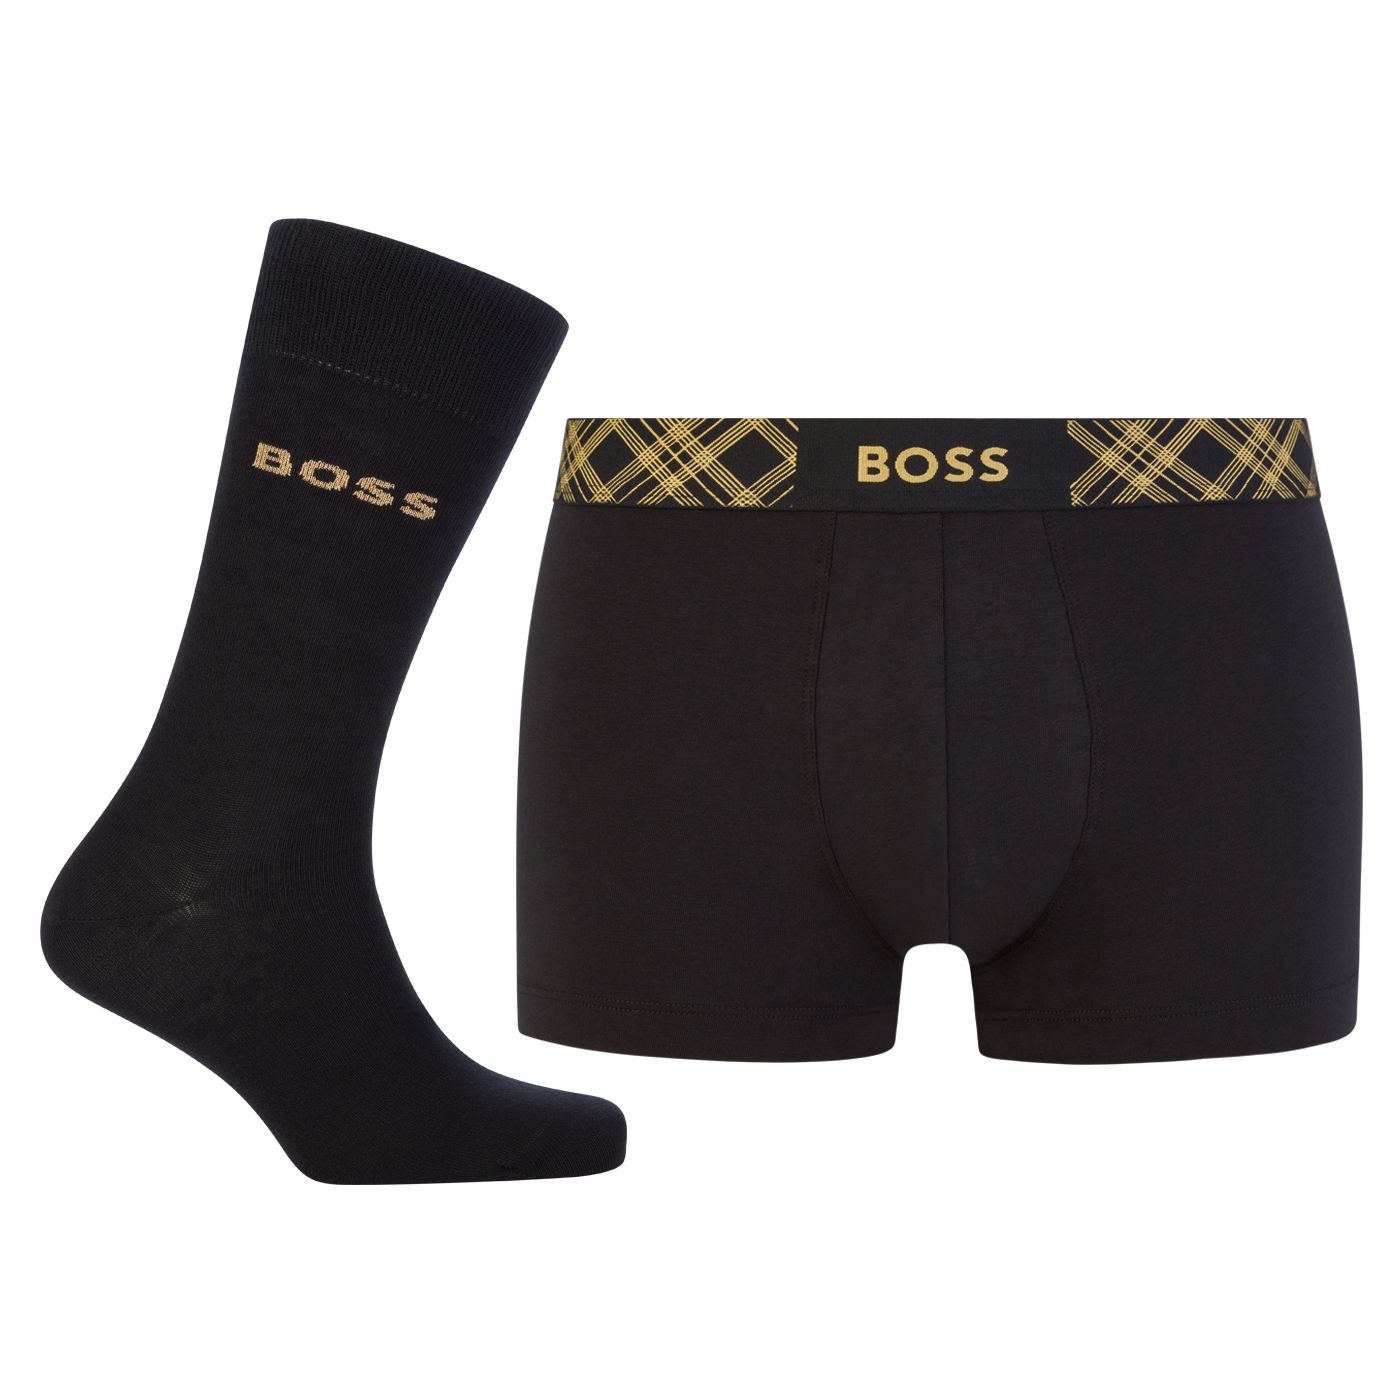 Hugo Boss Pánská sada - boxerky a ponožky BOSS 50500374-001 L